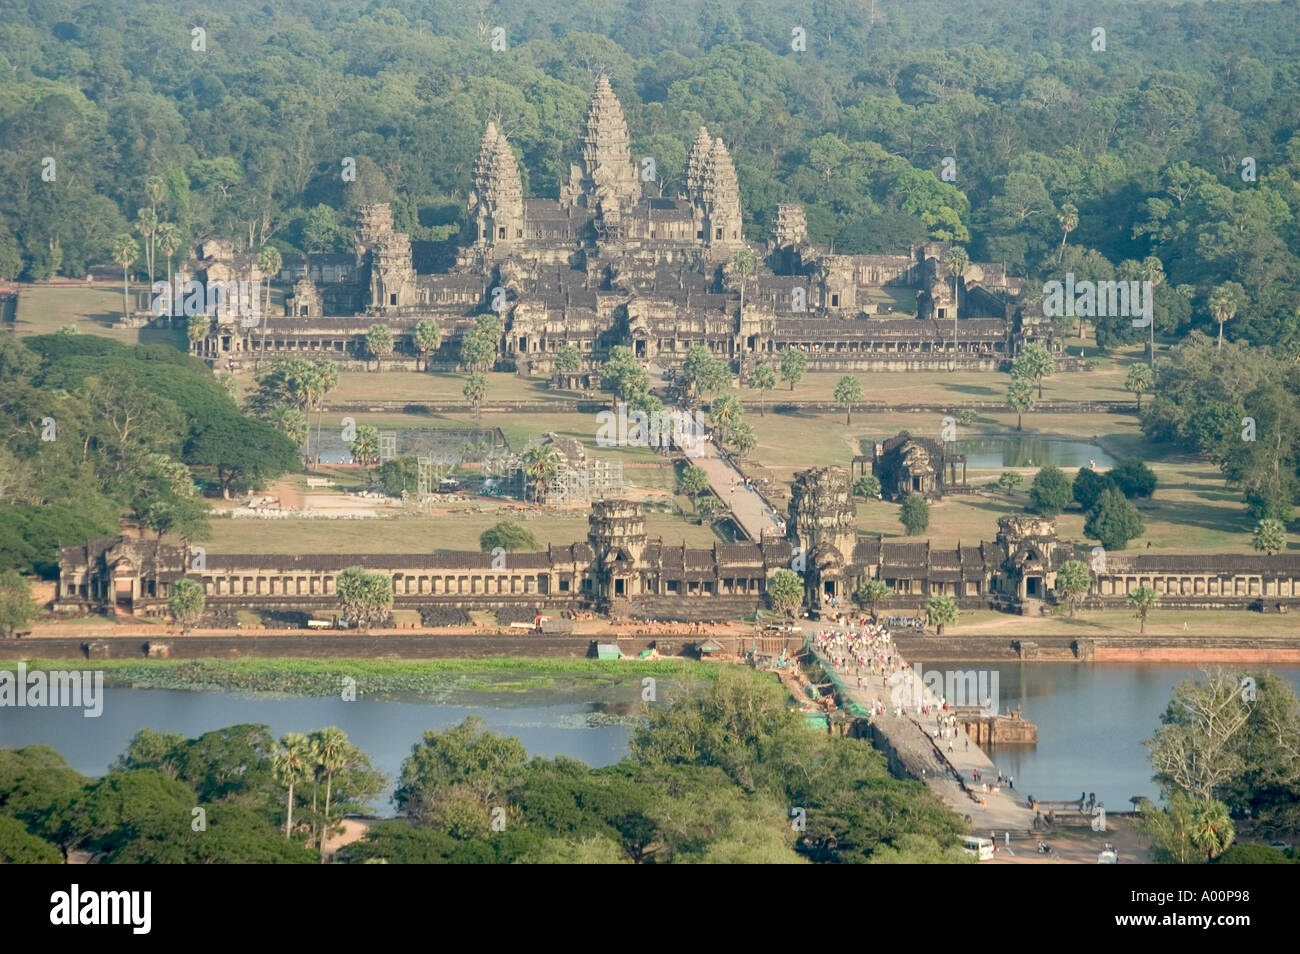 Vista aerea di Ankor Wat area da fisso di ballon Cambogia del Sud-est asiatico Foto Stock